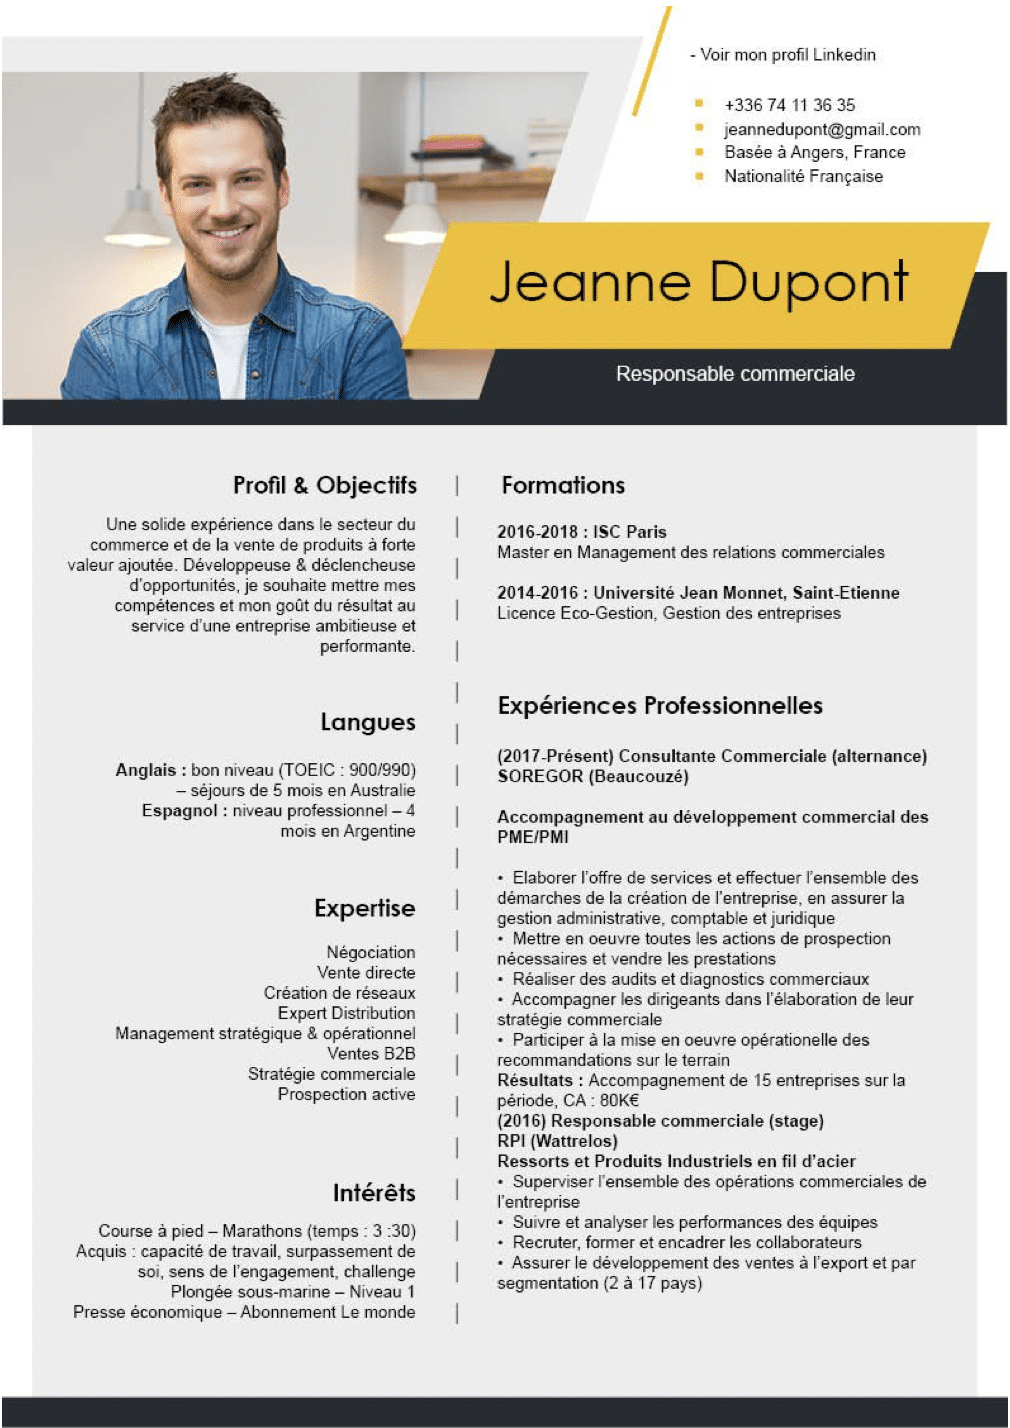 CV de Jeanne Dupont